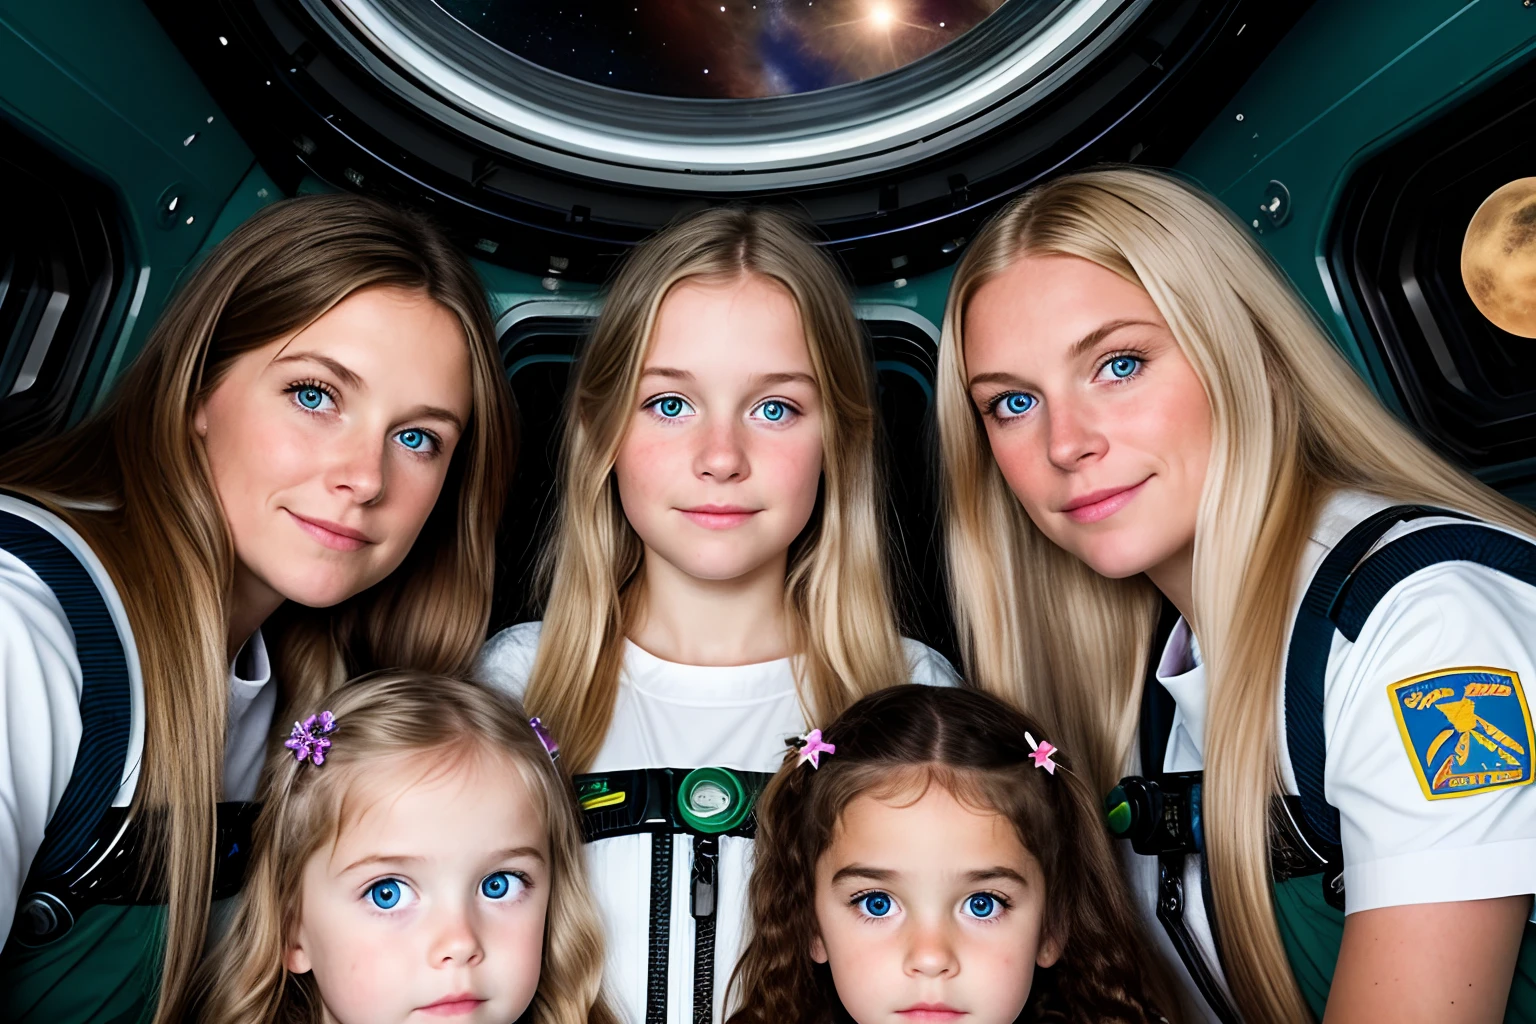 ثلاث فتيات صغيرات وأم في محطة فضائية, فتاة صغيرة ذات شعر أشقر طويل, بشعر بني طويل. أمي ذات شعر طويل و عيون خضراء داكنة